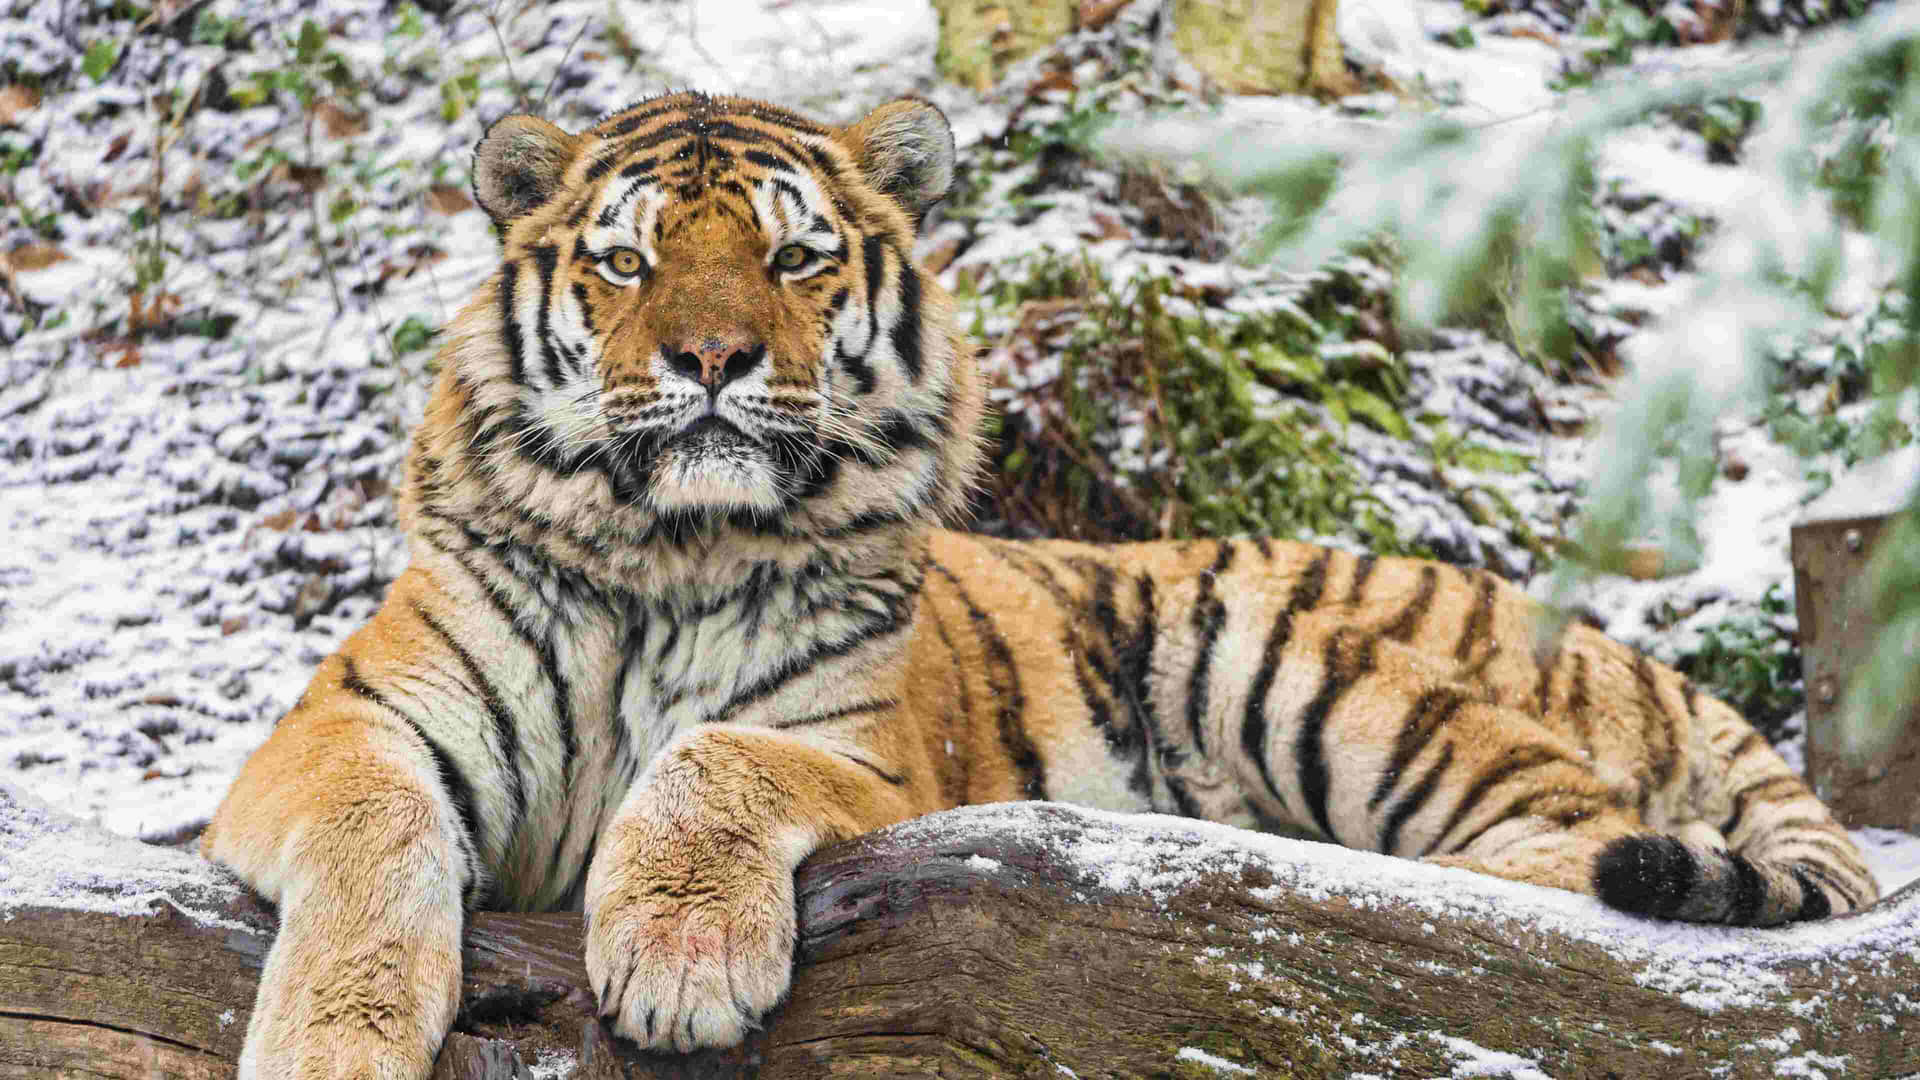 Siberian Tigerin Snowy Habitat.jpg Wallpaper